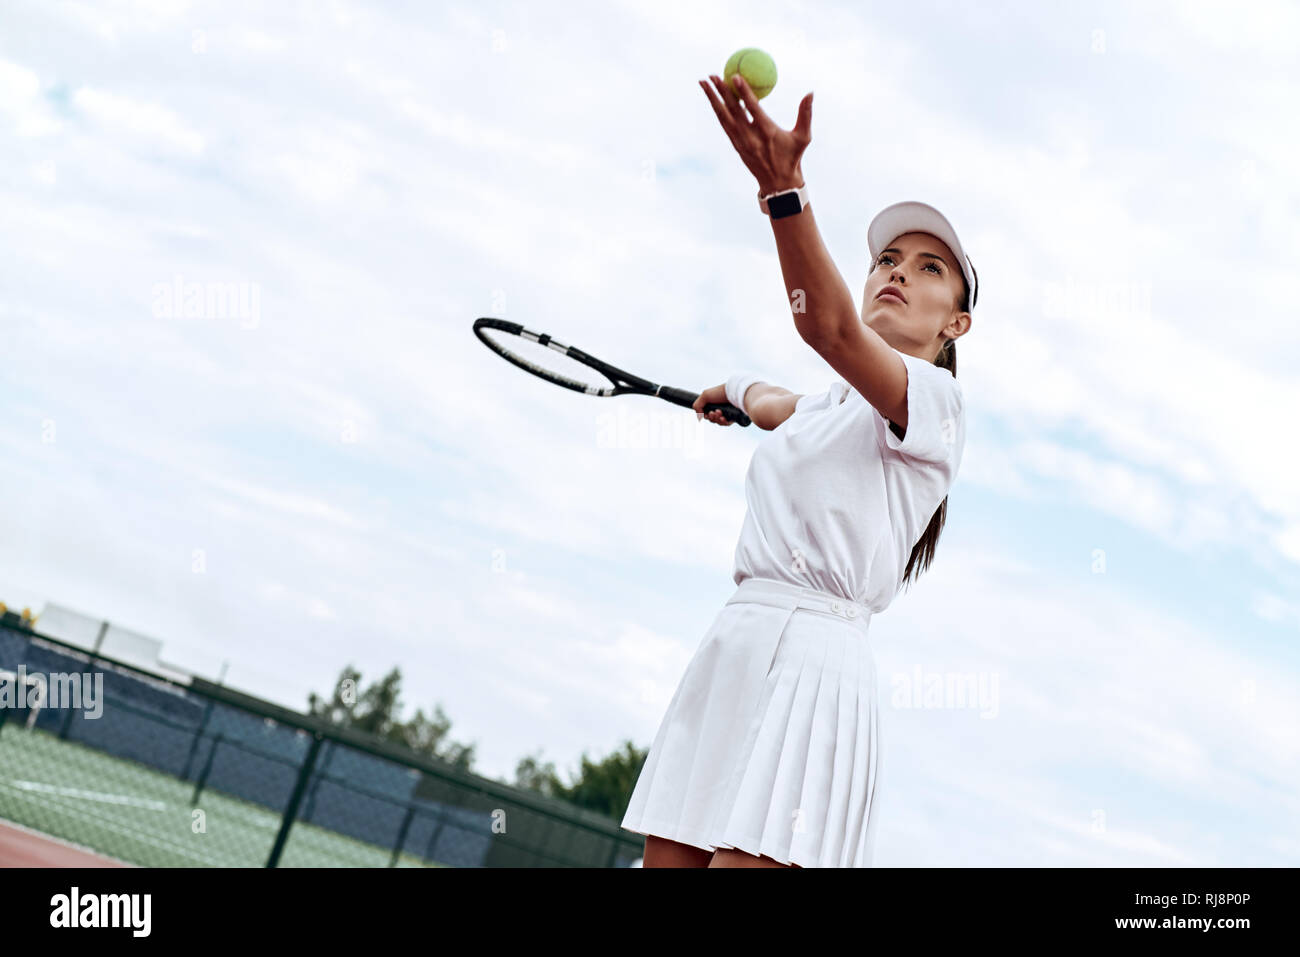 Attraktive Frau in Weiß Sportswear mit dem Schläger und dem Ball in der Hand ist bereit, den Ball auf dem Hof zu schlagen Stockfoto